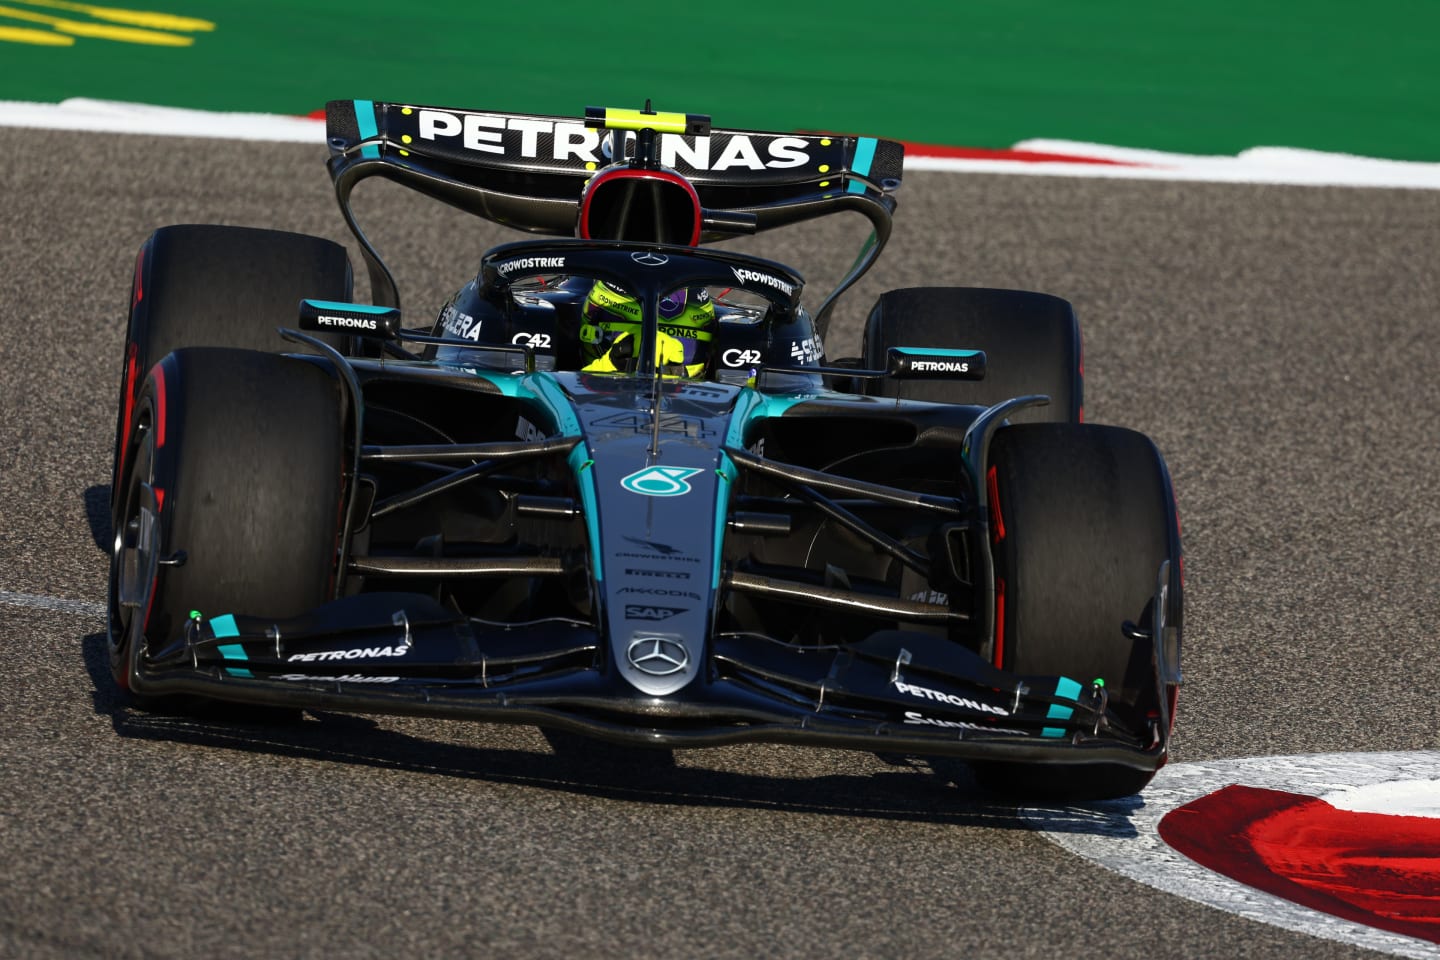 BAHRAIN, BAHRAIN - MARCH 01: Lewis Hamilton of Great Britain driving the (44) Mercedes AMG Petronas